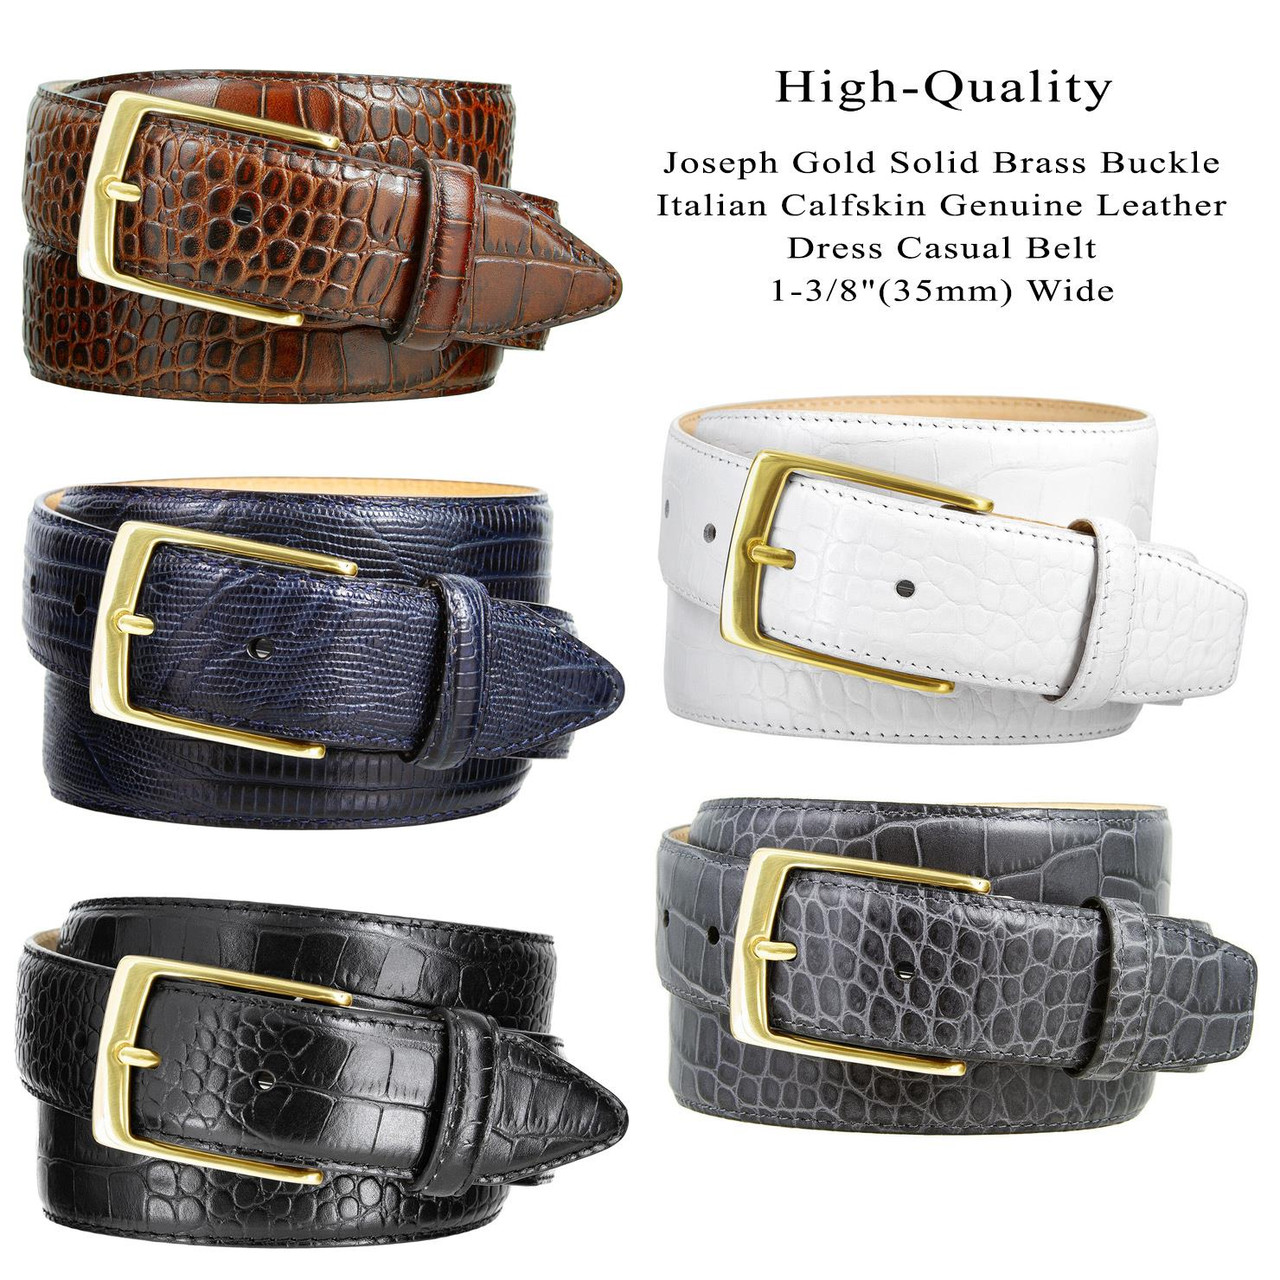 Men's Dress Belt Solid Brass Black Buckle Italian Calfskin Genuine Leather  Belt 1-1/8(30mm) Wide 